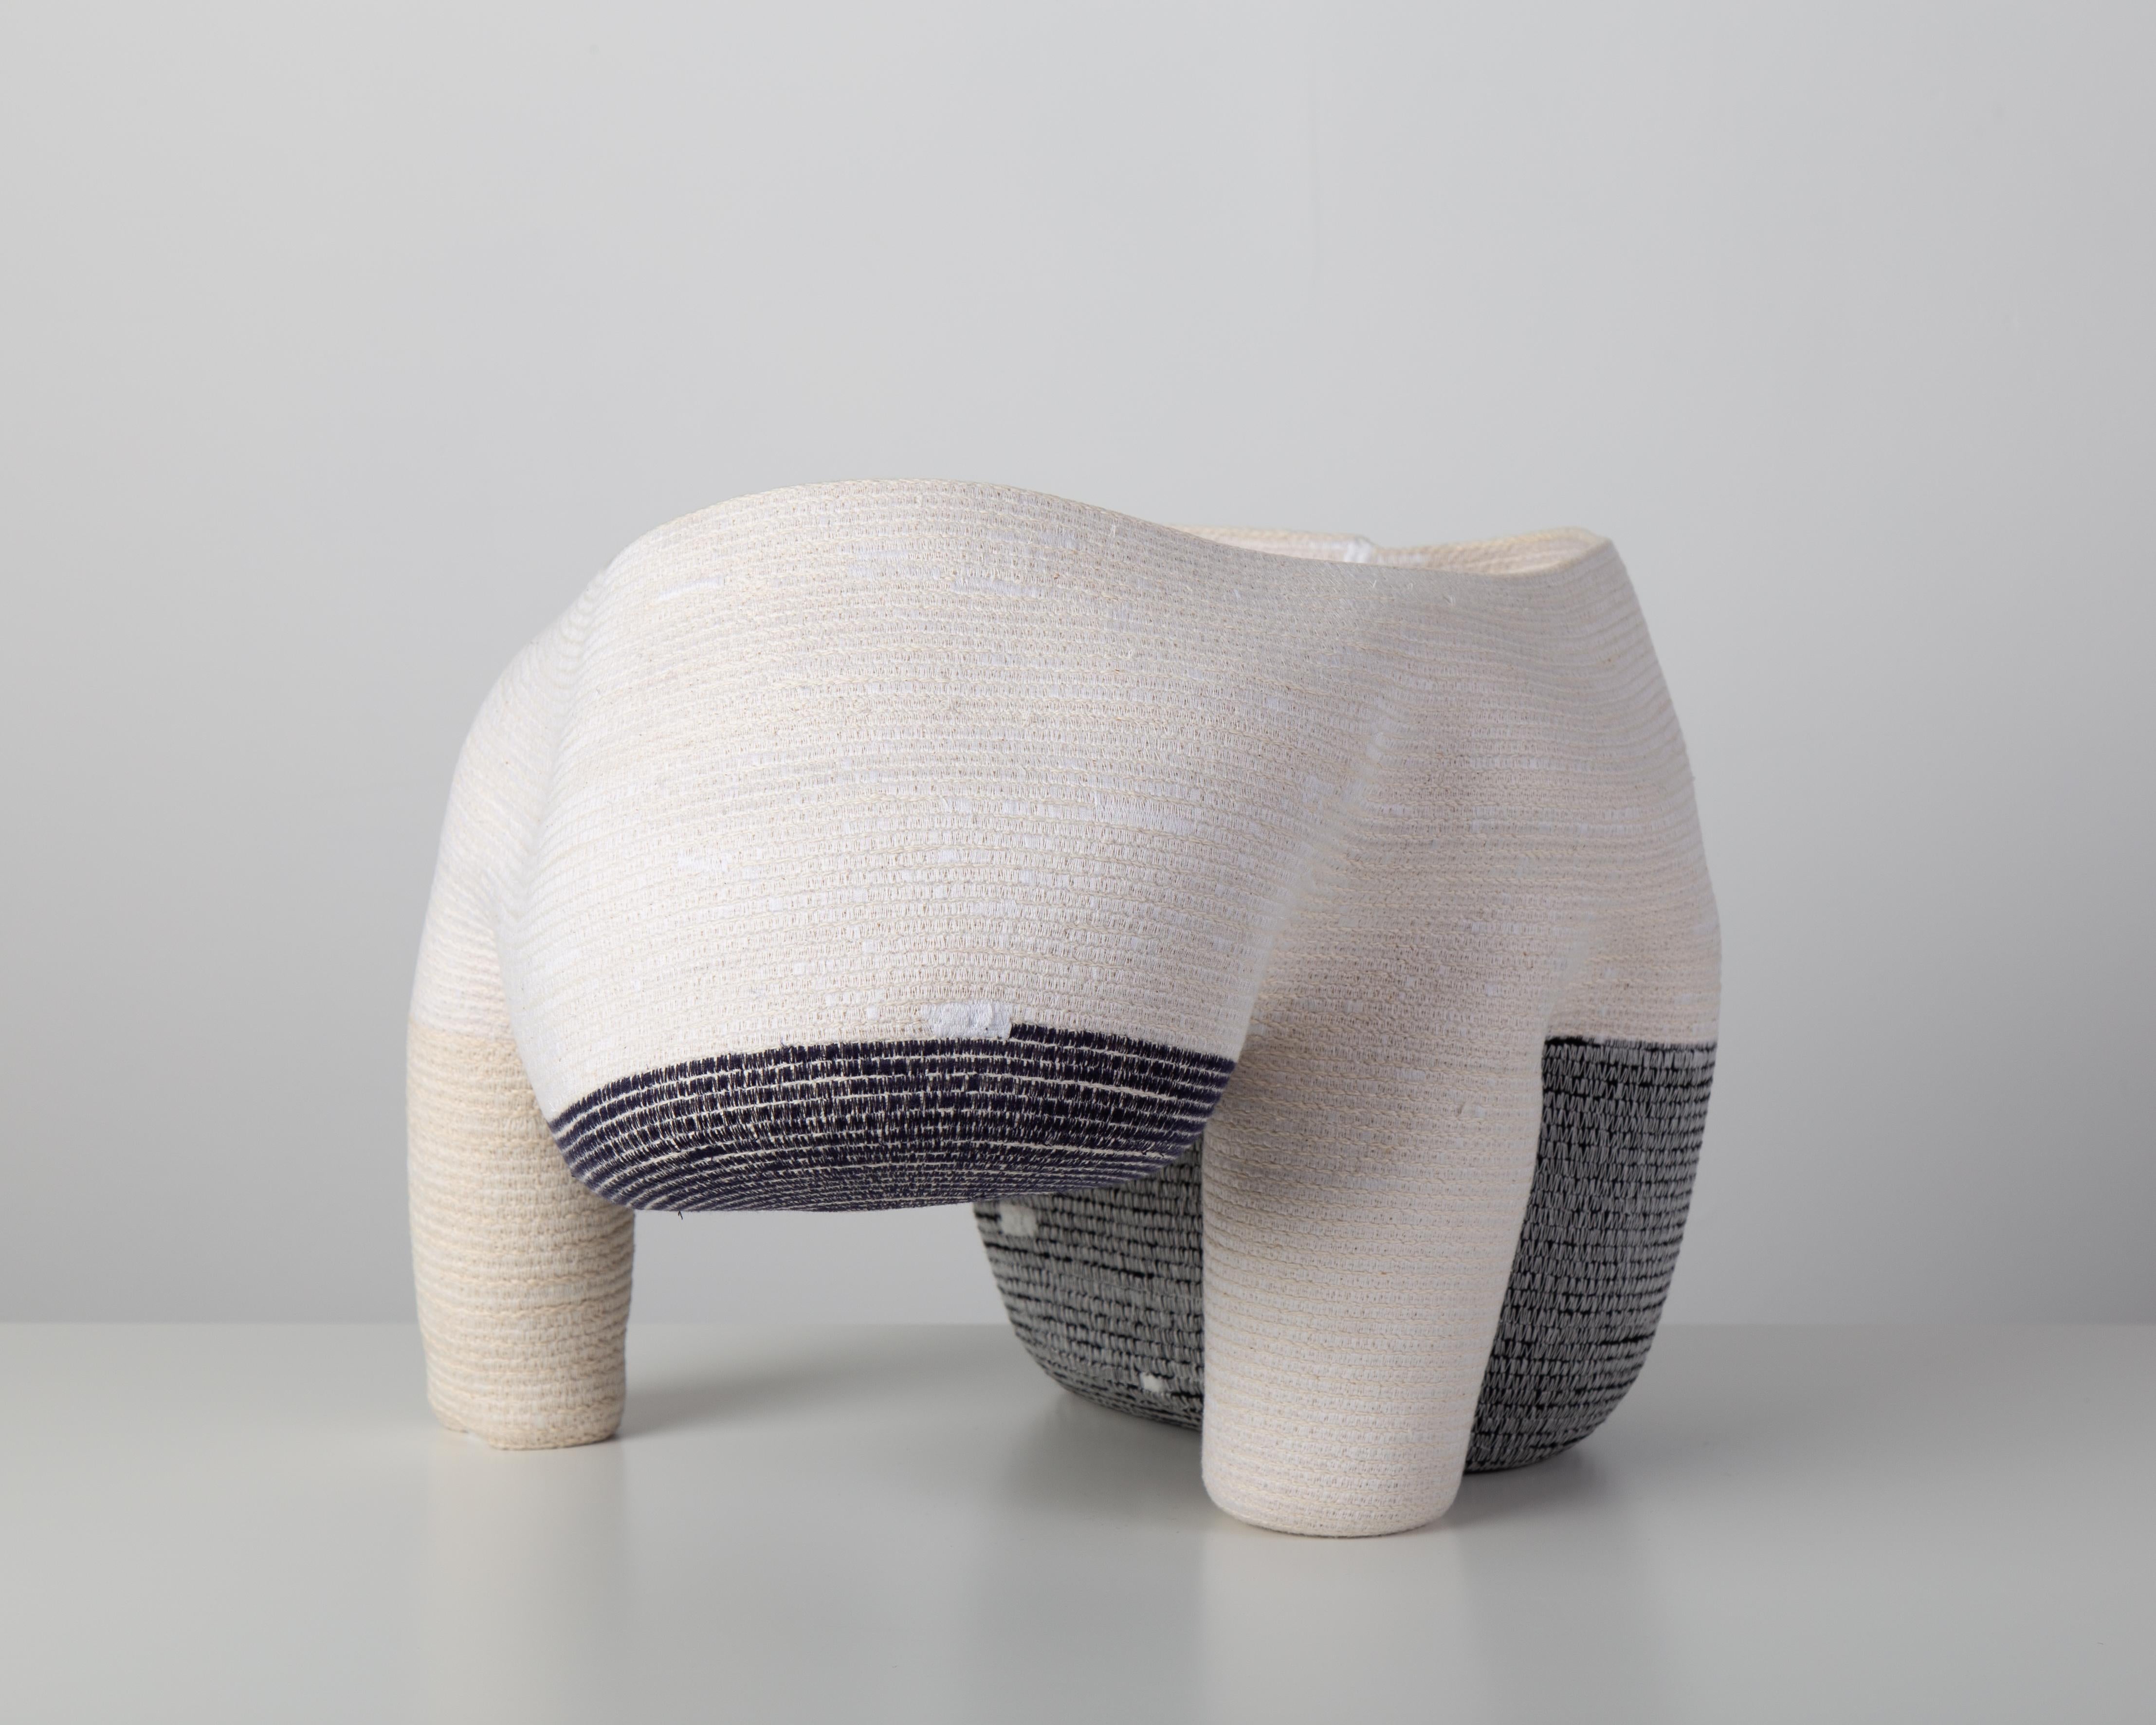 Moderne « Vase sans titre de 15 cm » Sculpture en fibre de coton enroulée et cousue de Doug Johnston